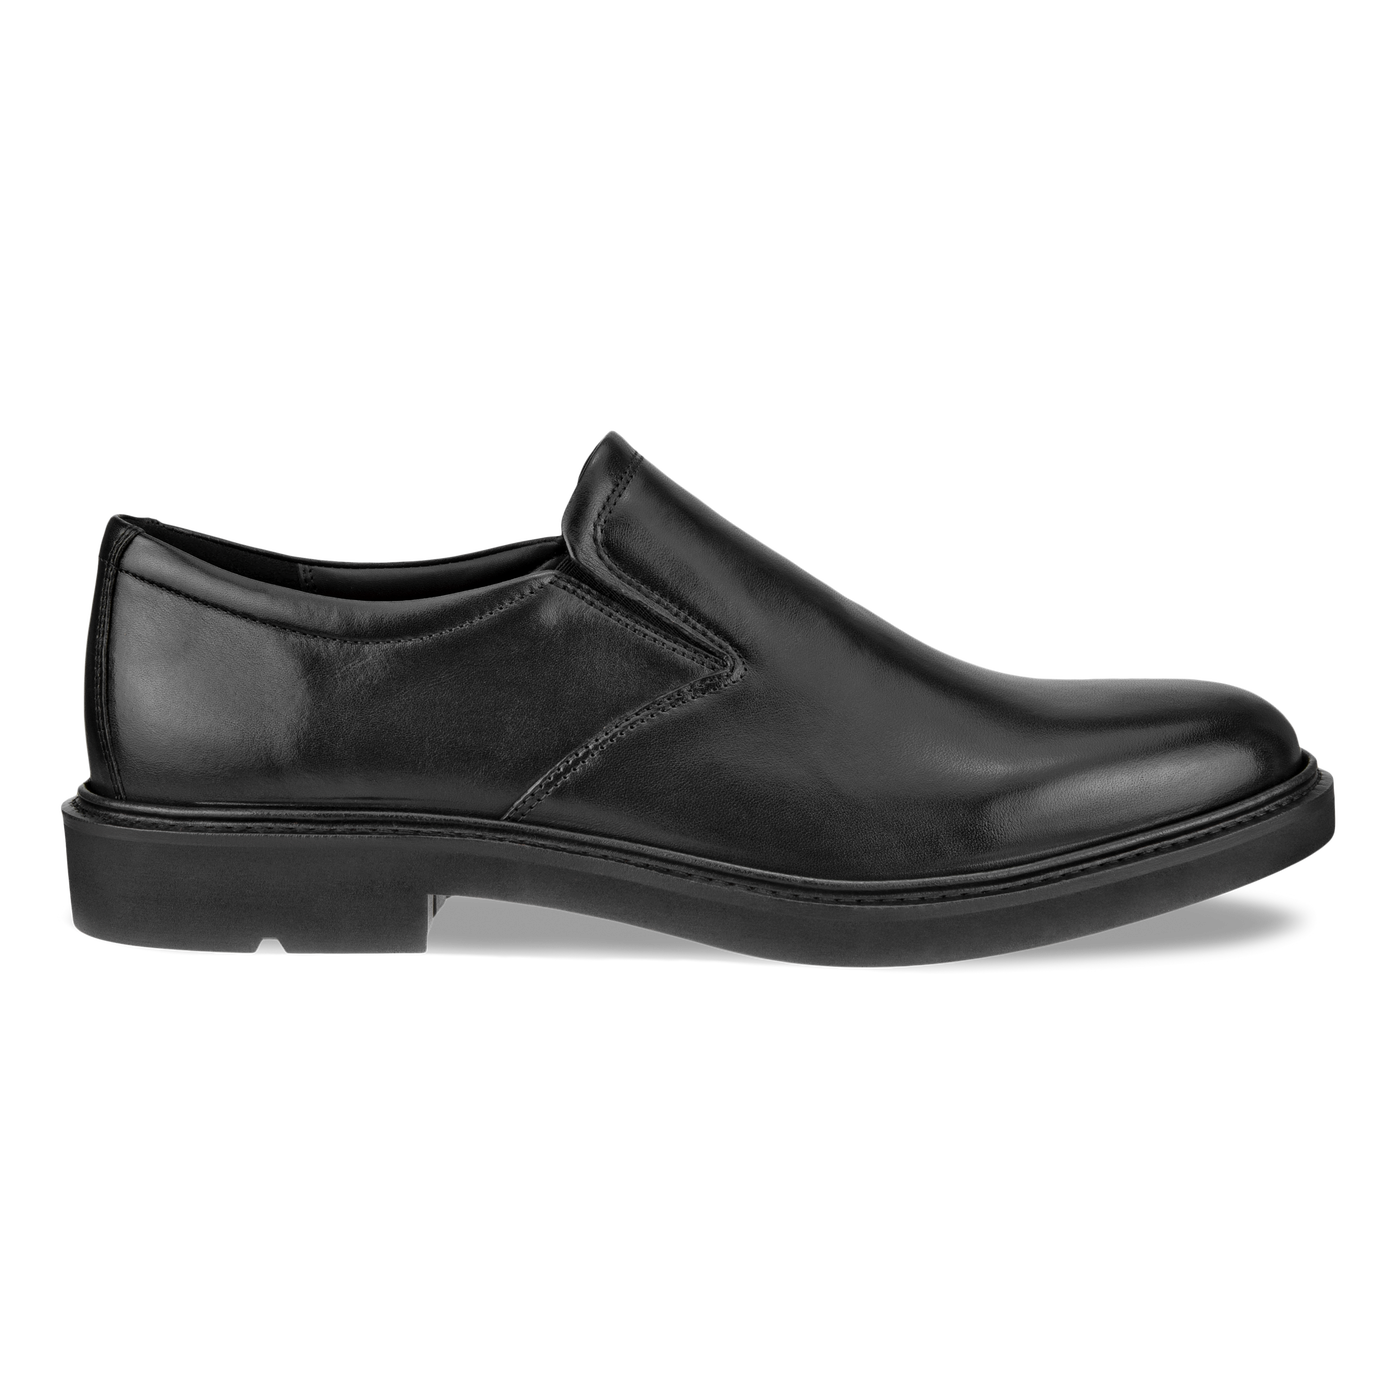 ECCO MEN'S METROPOLE LONDON SLIP-ON SHOES | Official ECCO® Shoes